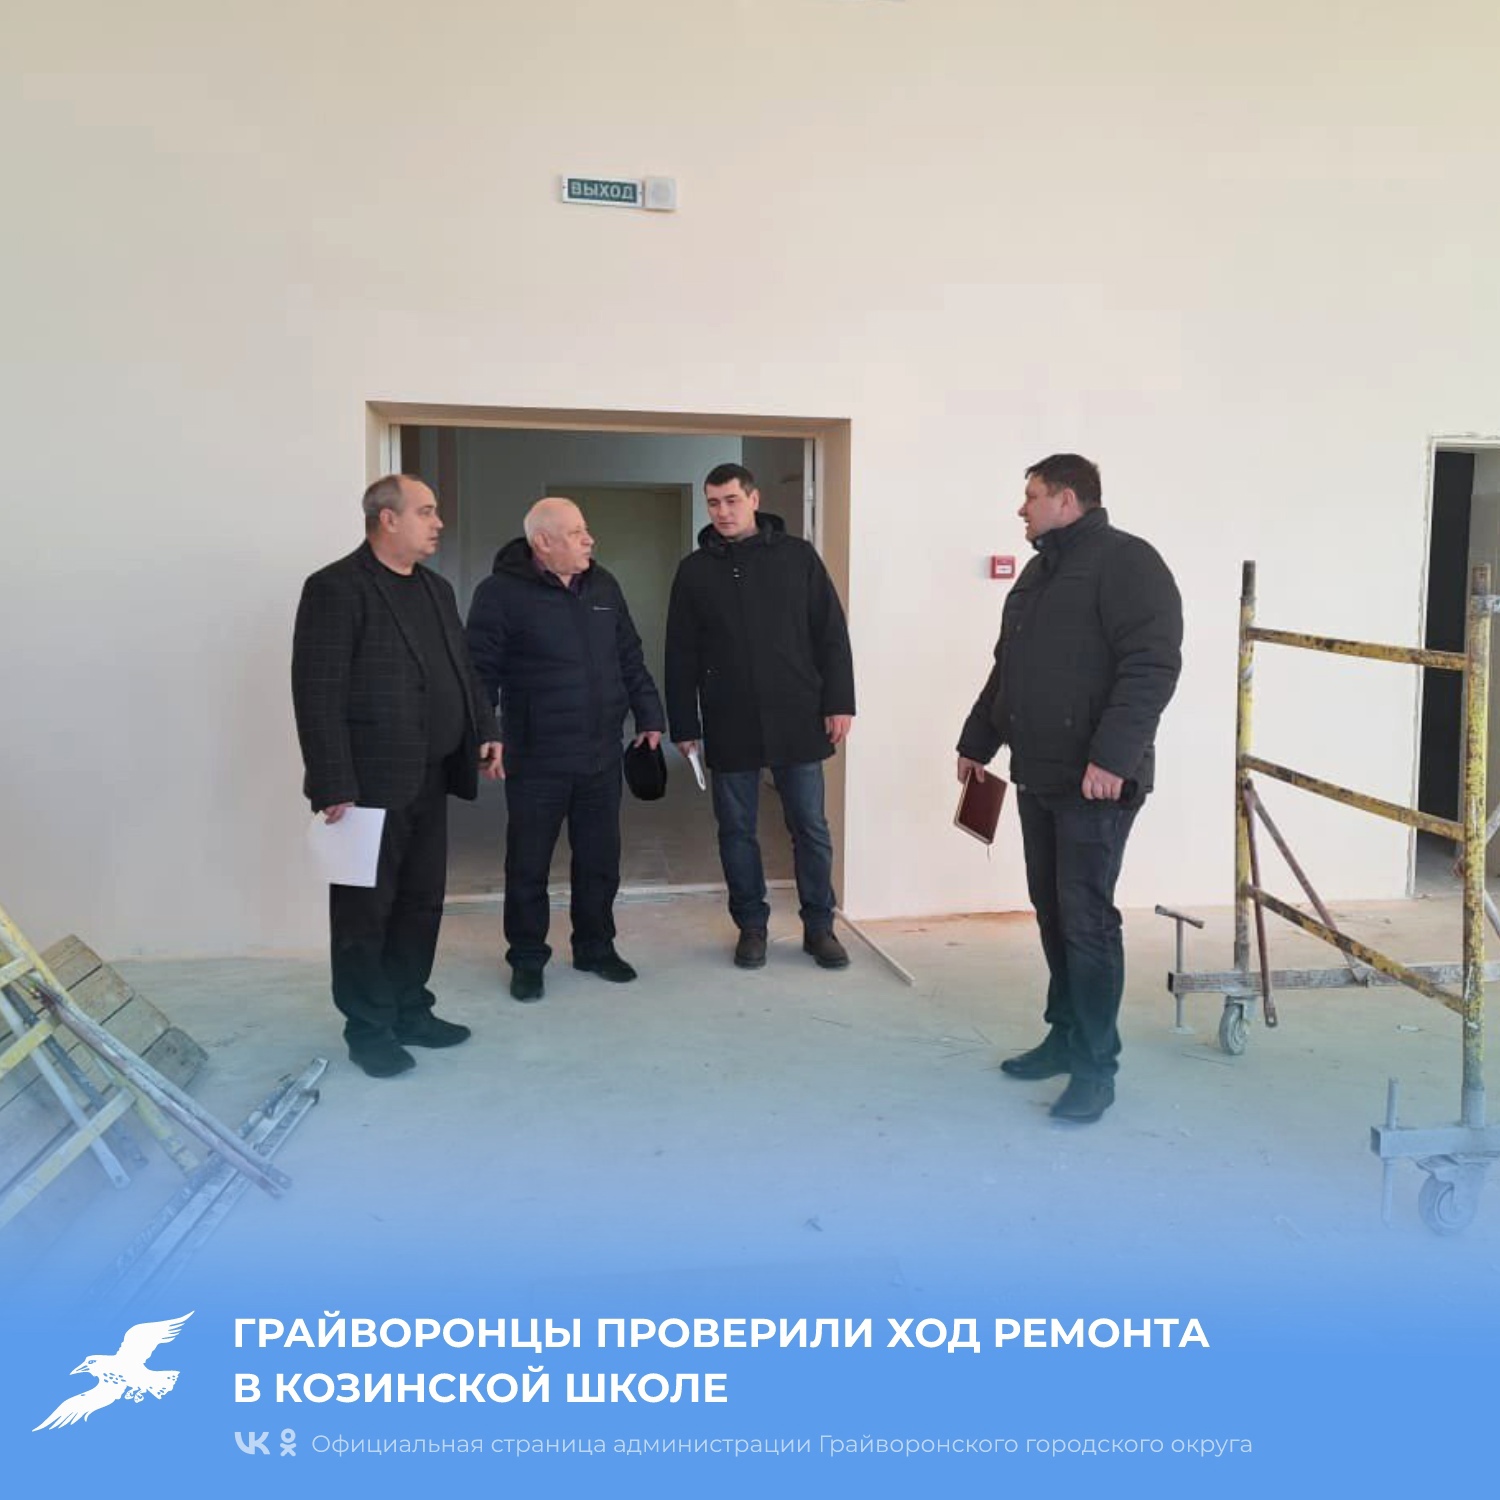 Грайворонцы проверили ход ремонта в Козинской школе